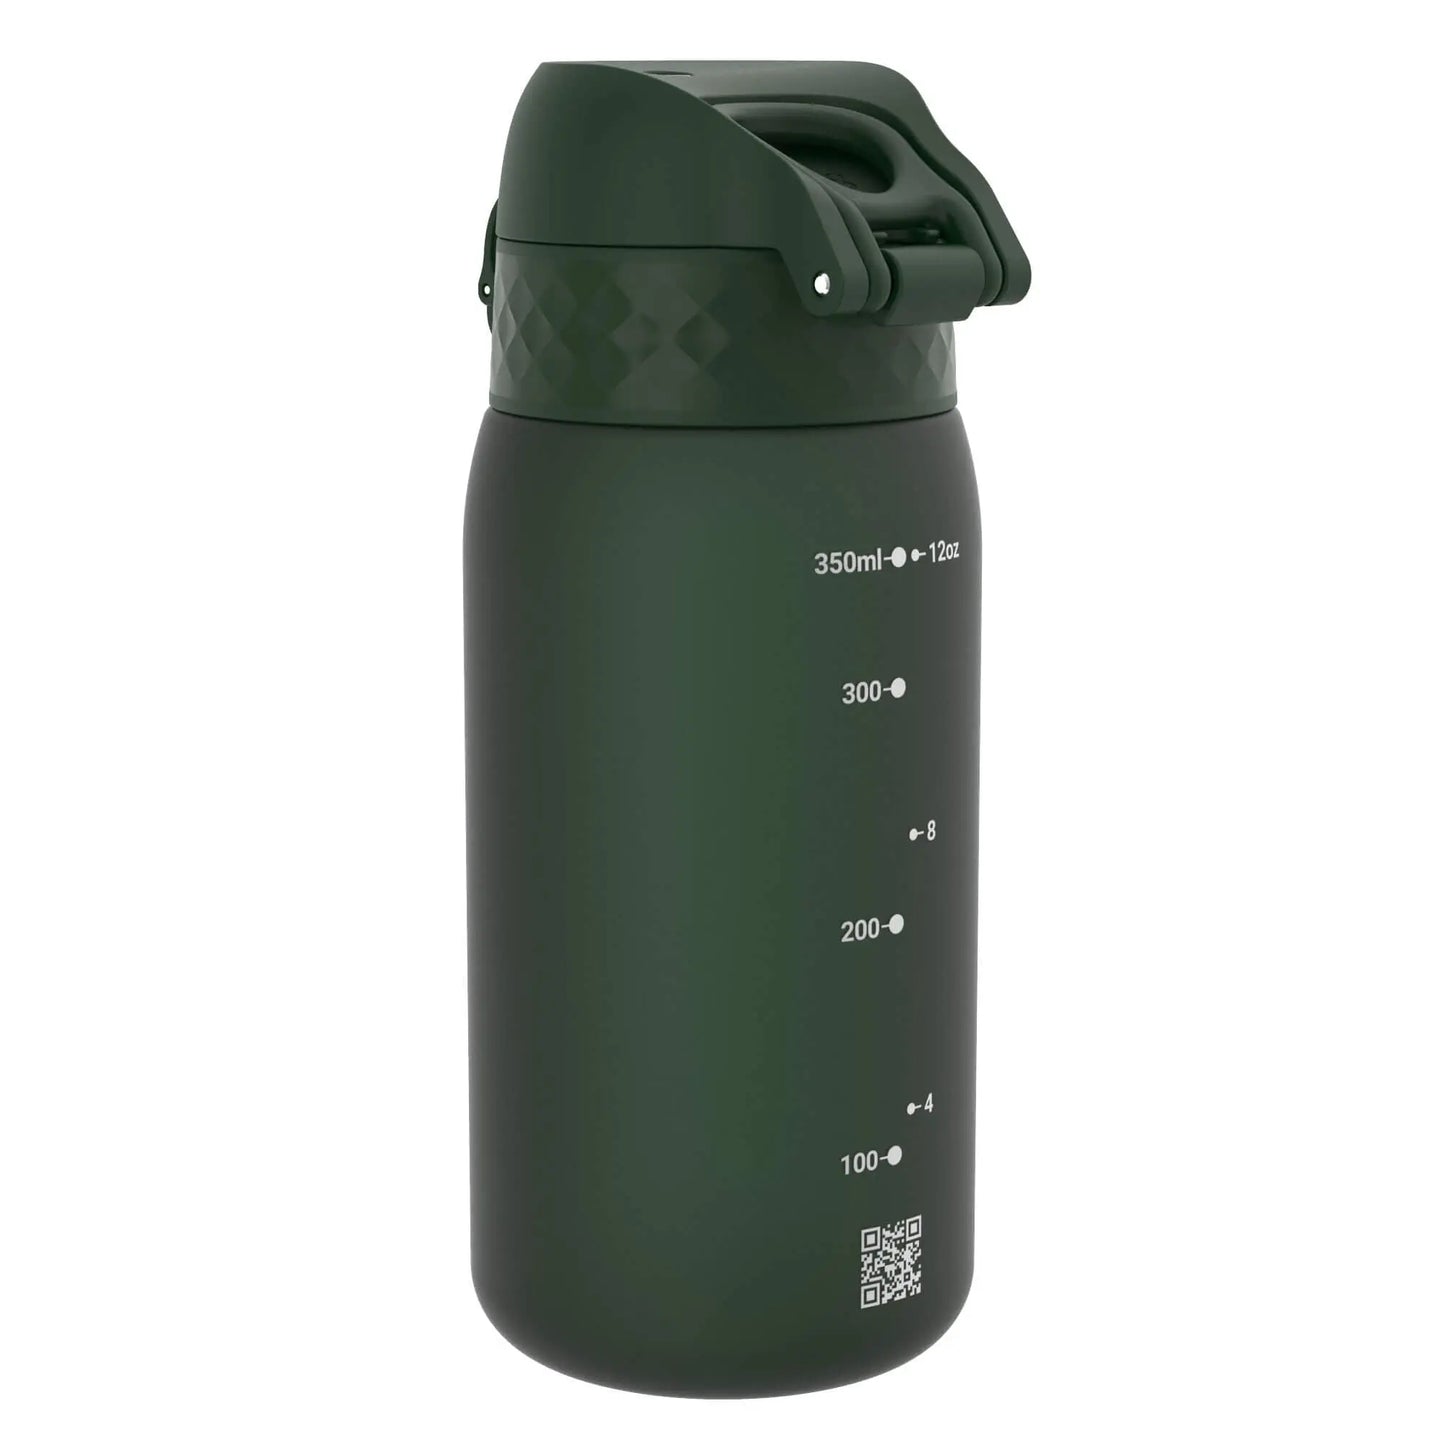 Leak Proof Kids Water Bottle, Recyclon™, Dark Green, 350ml (12oz) - ION8